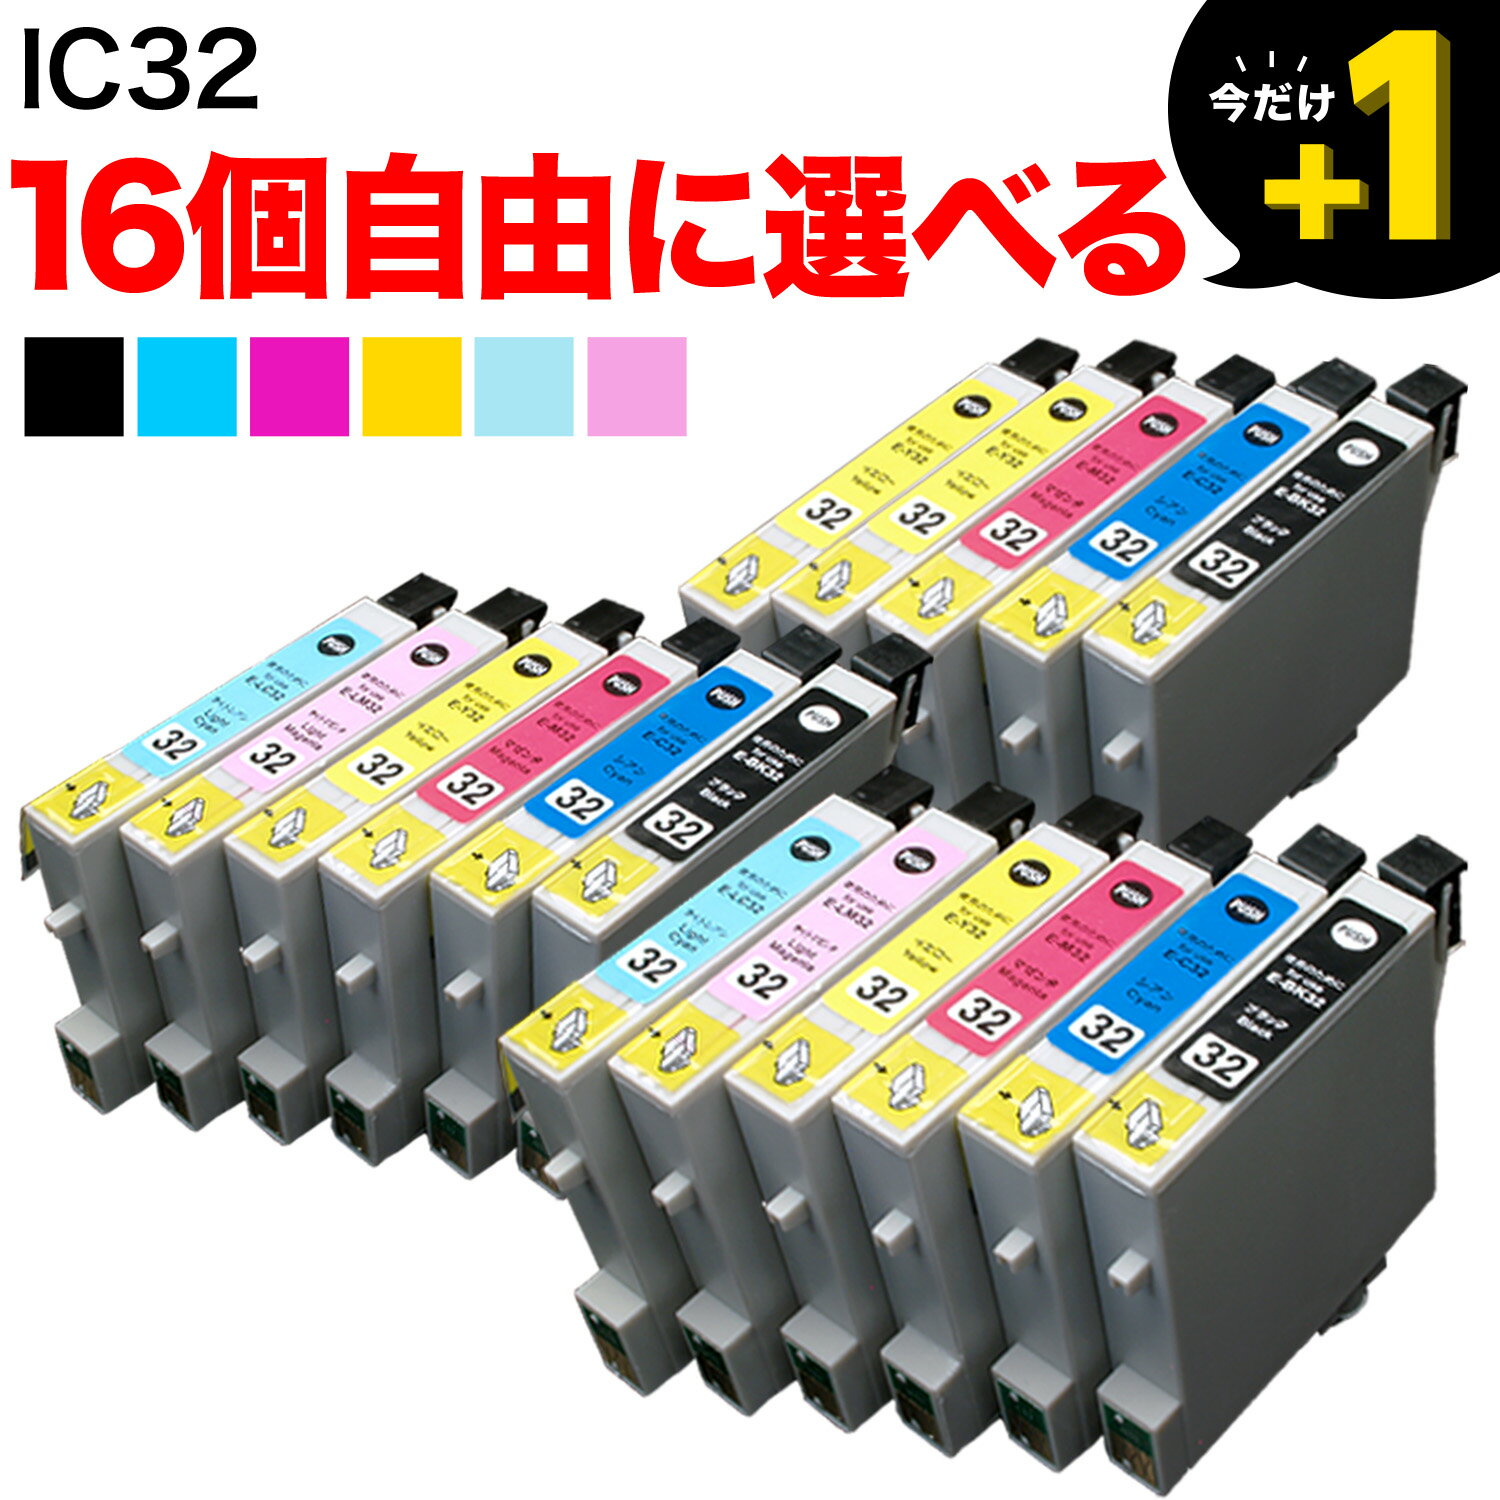 IC32 エプソン用 互換インクカートリッジ 自由選択16個セット フリーチョイス 選べる16個 L-4170G PM-A700 PM-A750 PM-A850 PM-A850V PM-A870 PM-A890 PM-D600 PM-D750 PM-D750V